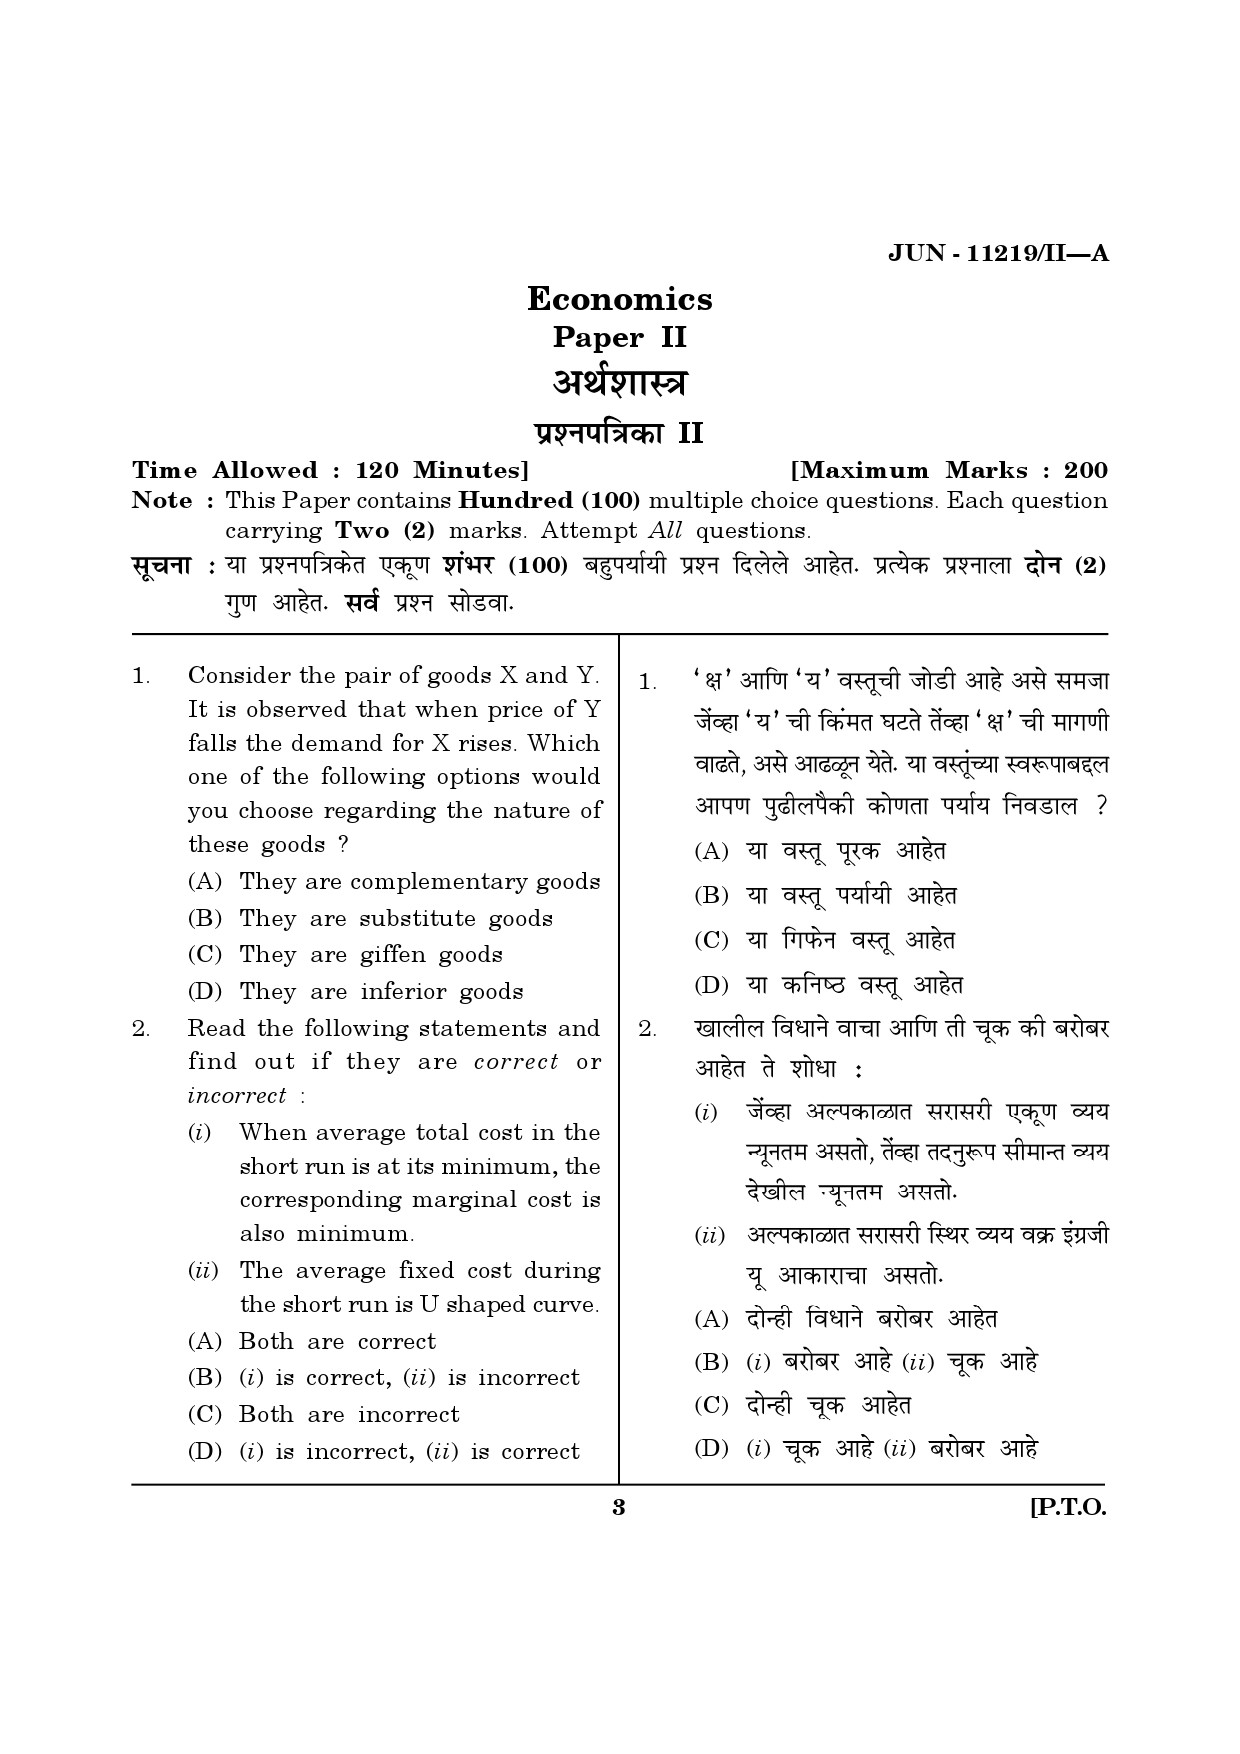 Maharashtra SET Economics Question Paper II June 2019 2